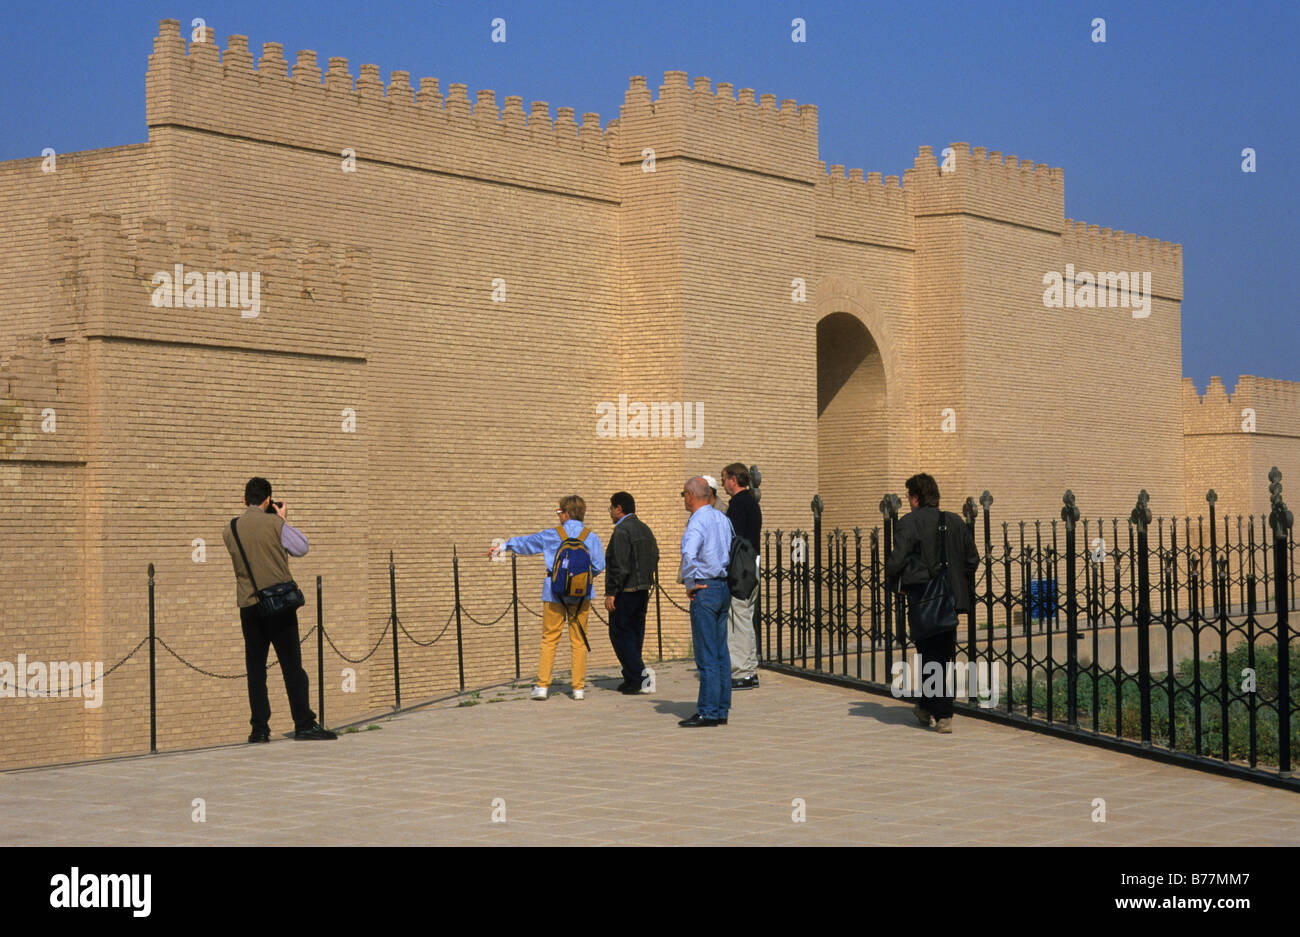 Les touristes en face d'une porte du Palais Royal de Nabuchodonosor II, Babylone, reconstruction, Iraq, Middle East Banque D'Images